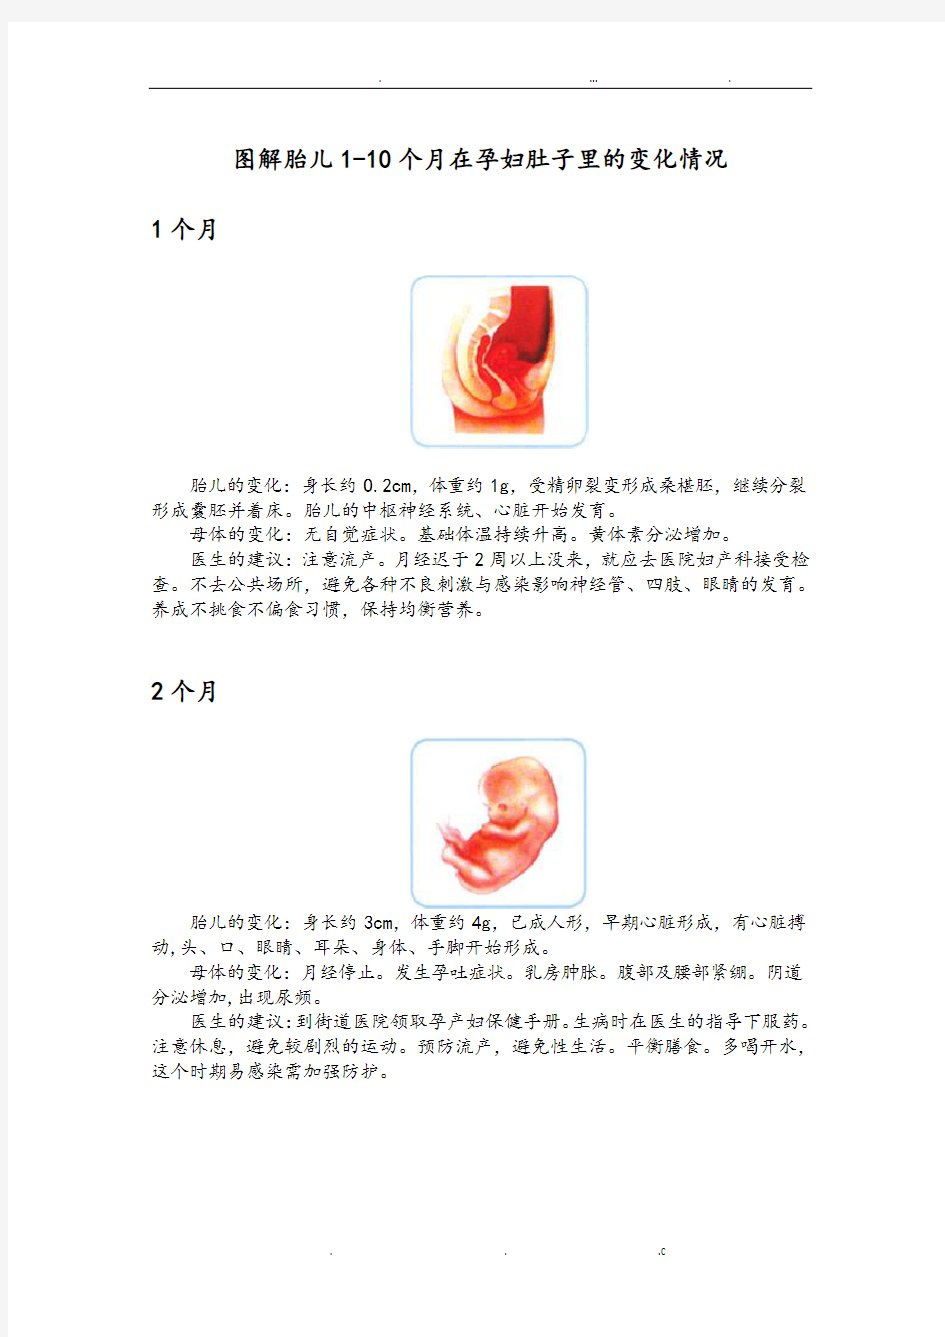 图解胎儿1—10个月在孕妇肚子里的变化情况